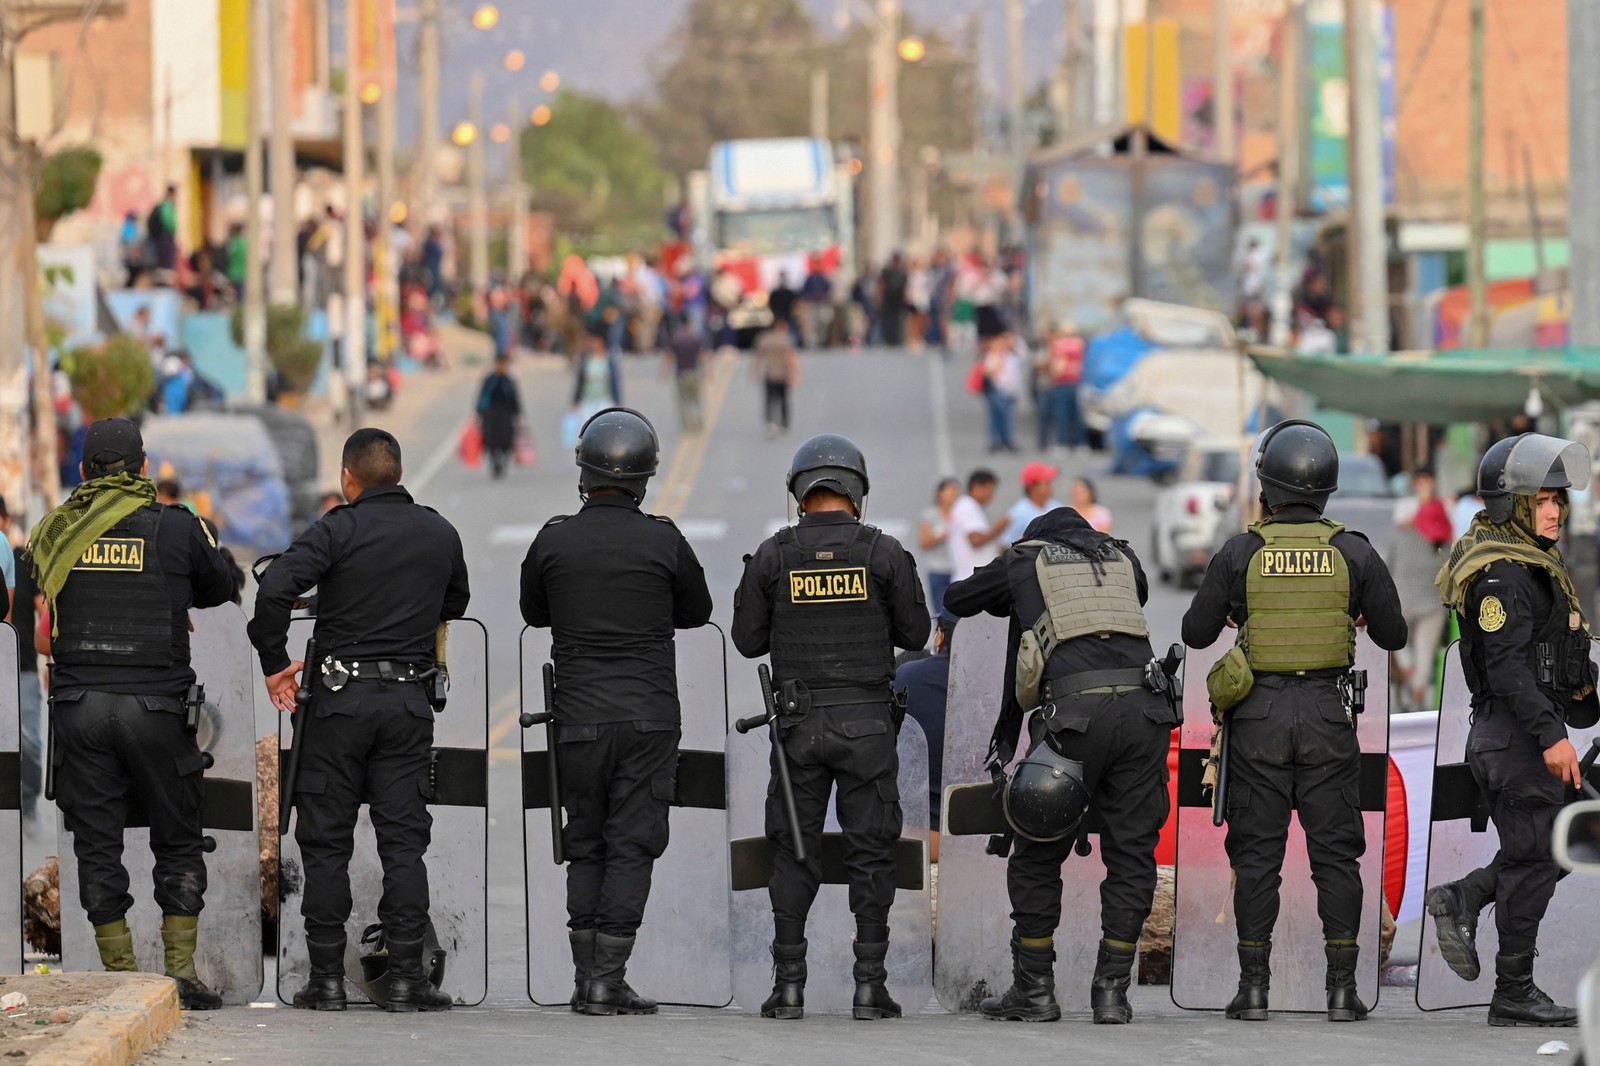 Policiais montam guarda em uma rua de Humay, Peru, depois de deter um comboio de manifestantes Chancas, da região central dos Andes, a caminho de Lima para participar de uma grande protesto contra a presidente Dina Boluarte — Foto: Cris BOURONCLE / AFP